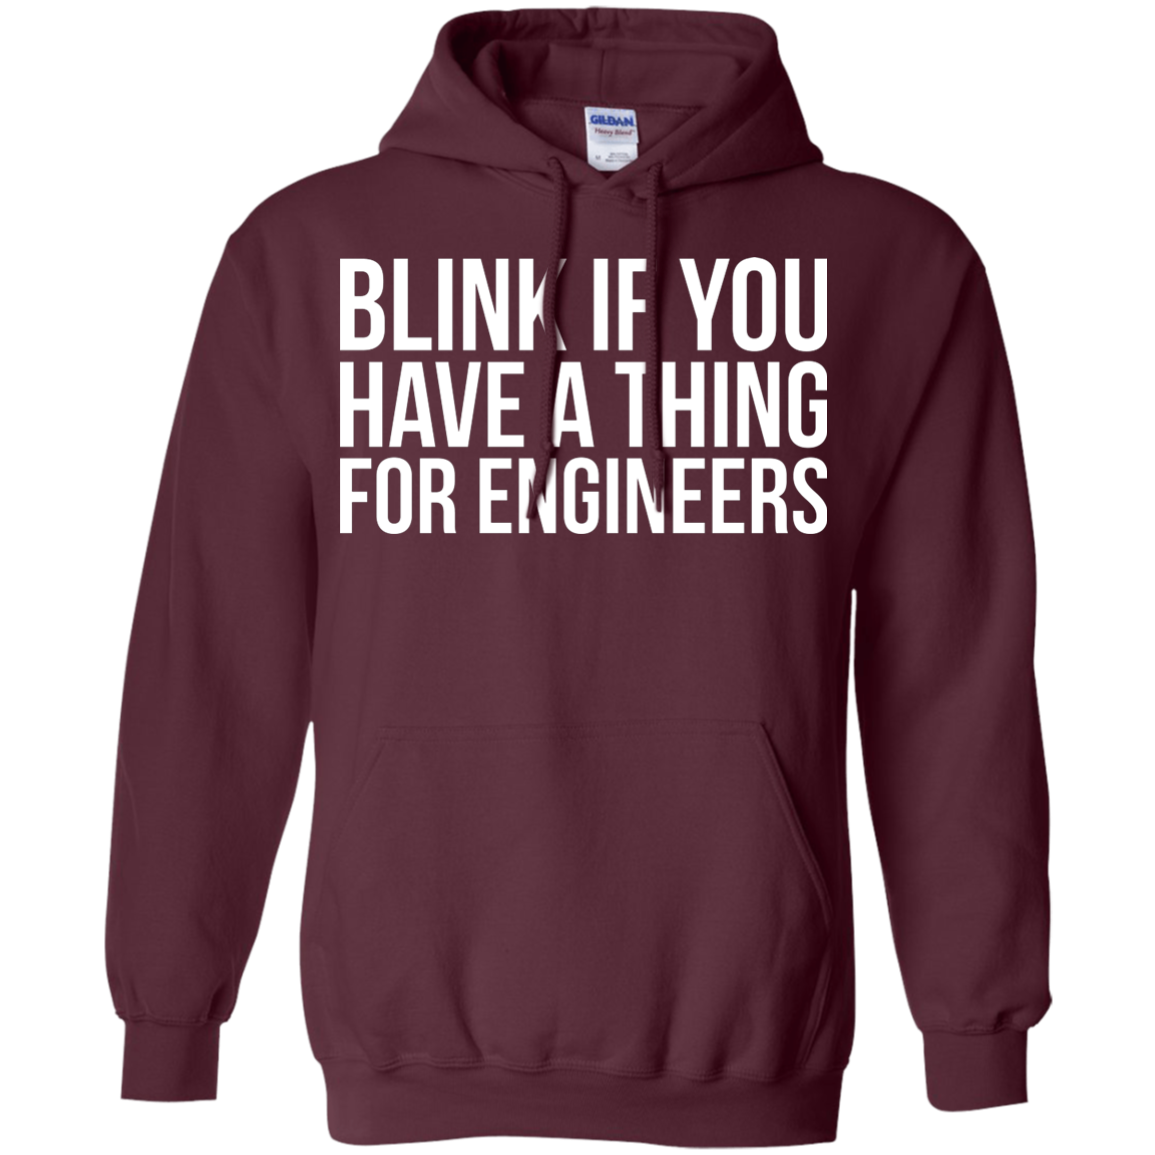 Parpadea si te gustan los ingenieros